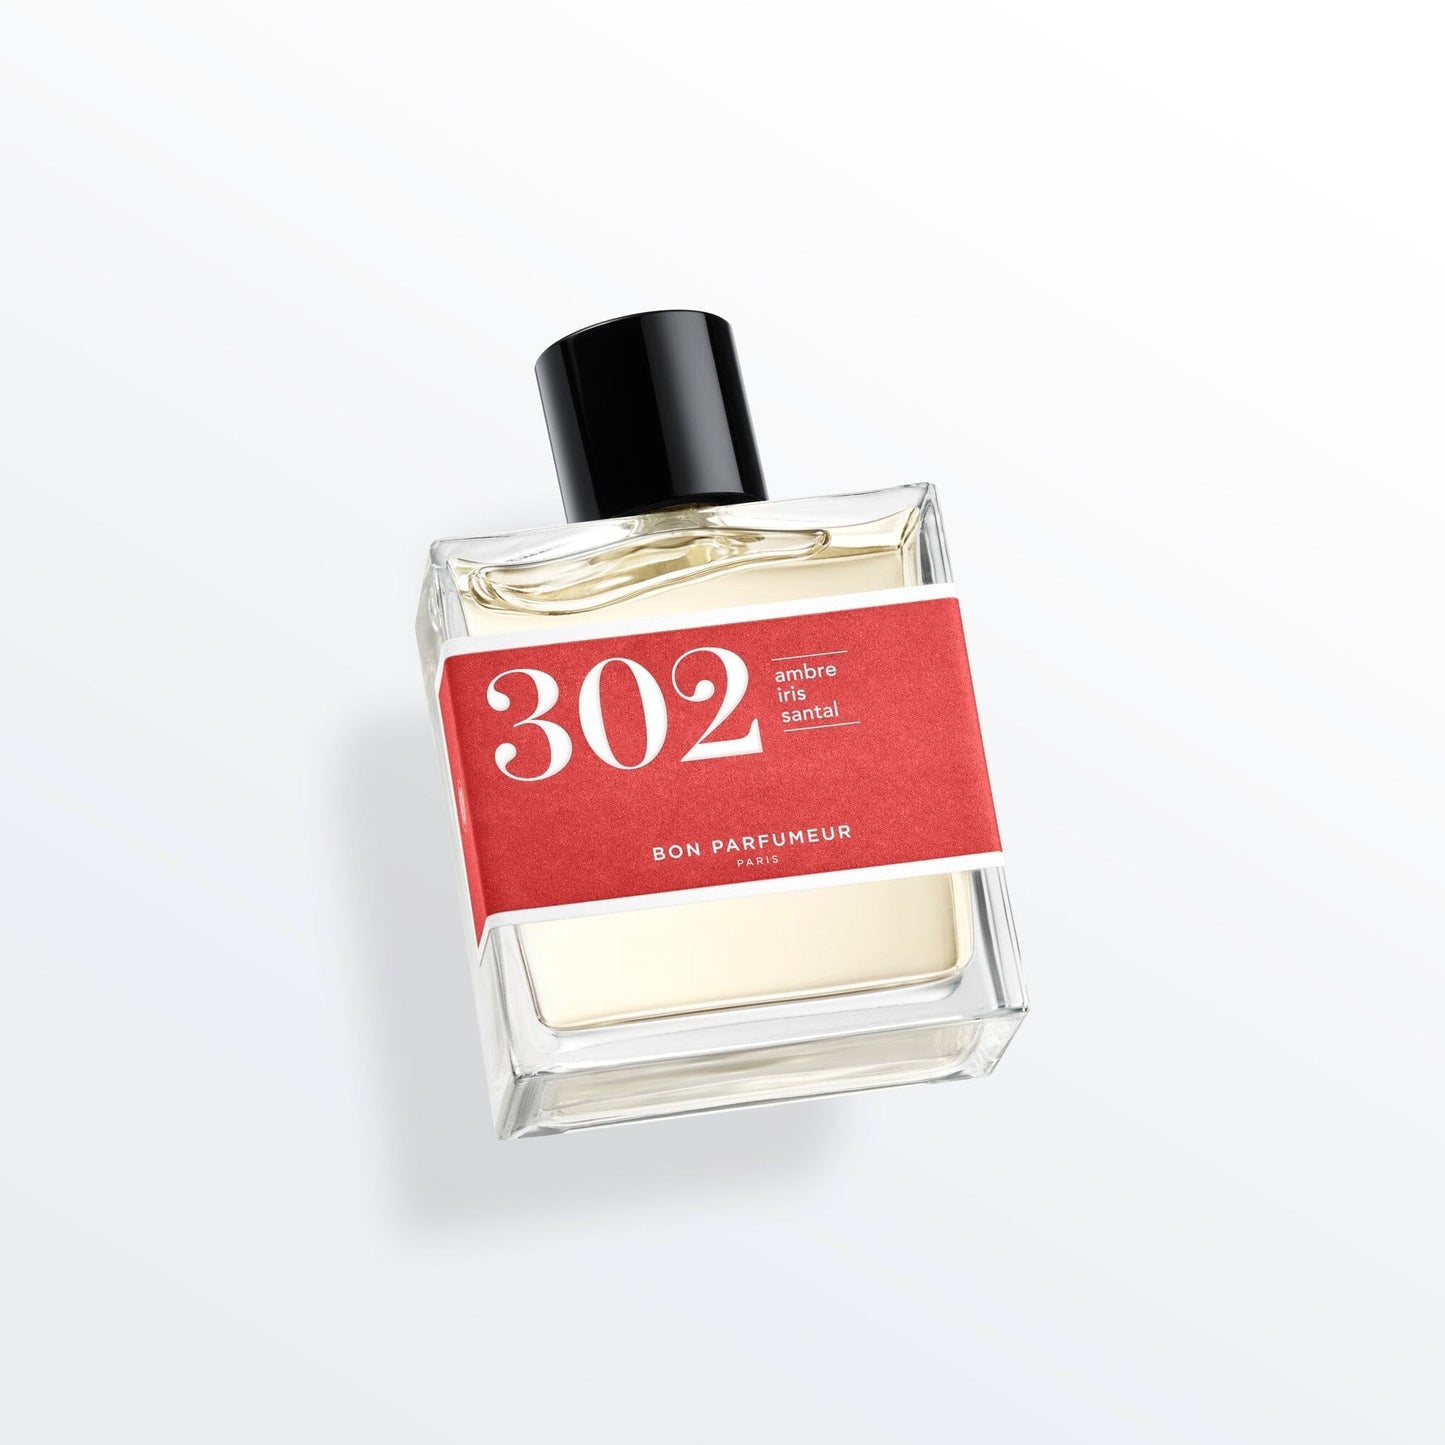 Eau de parfum 302 à l'ambre, à l'iris et au santal Eau de parfum Bon Parfumeur France 100ml+15ml (15ml -50%) 